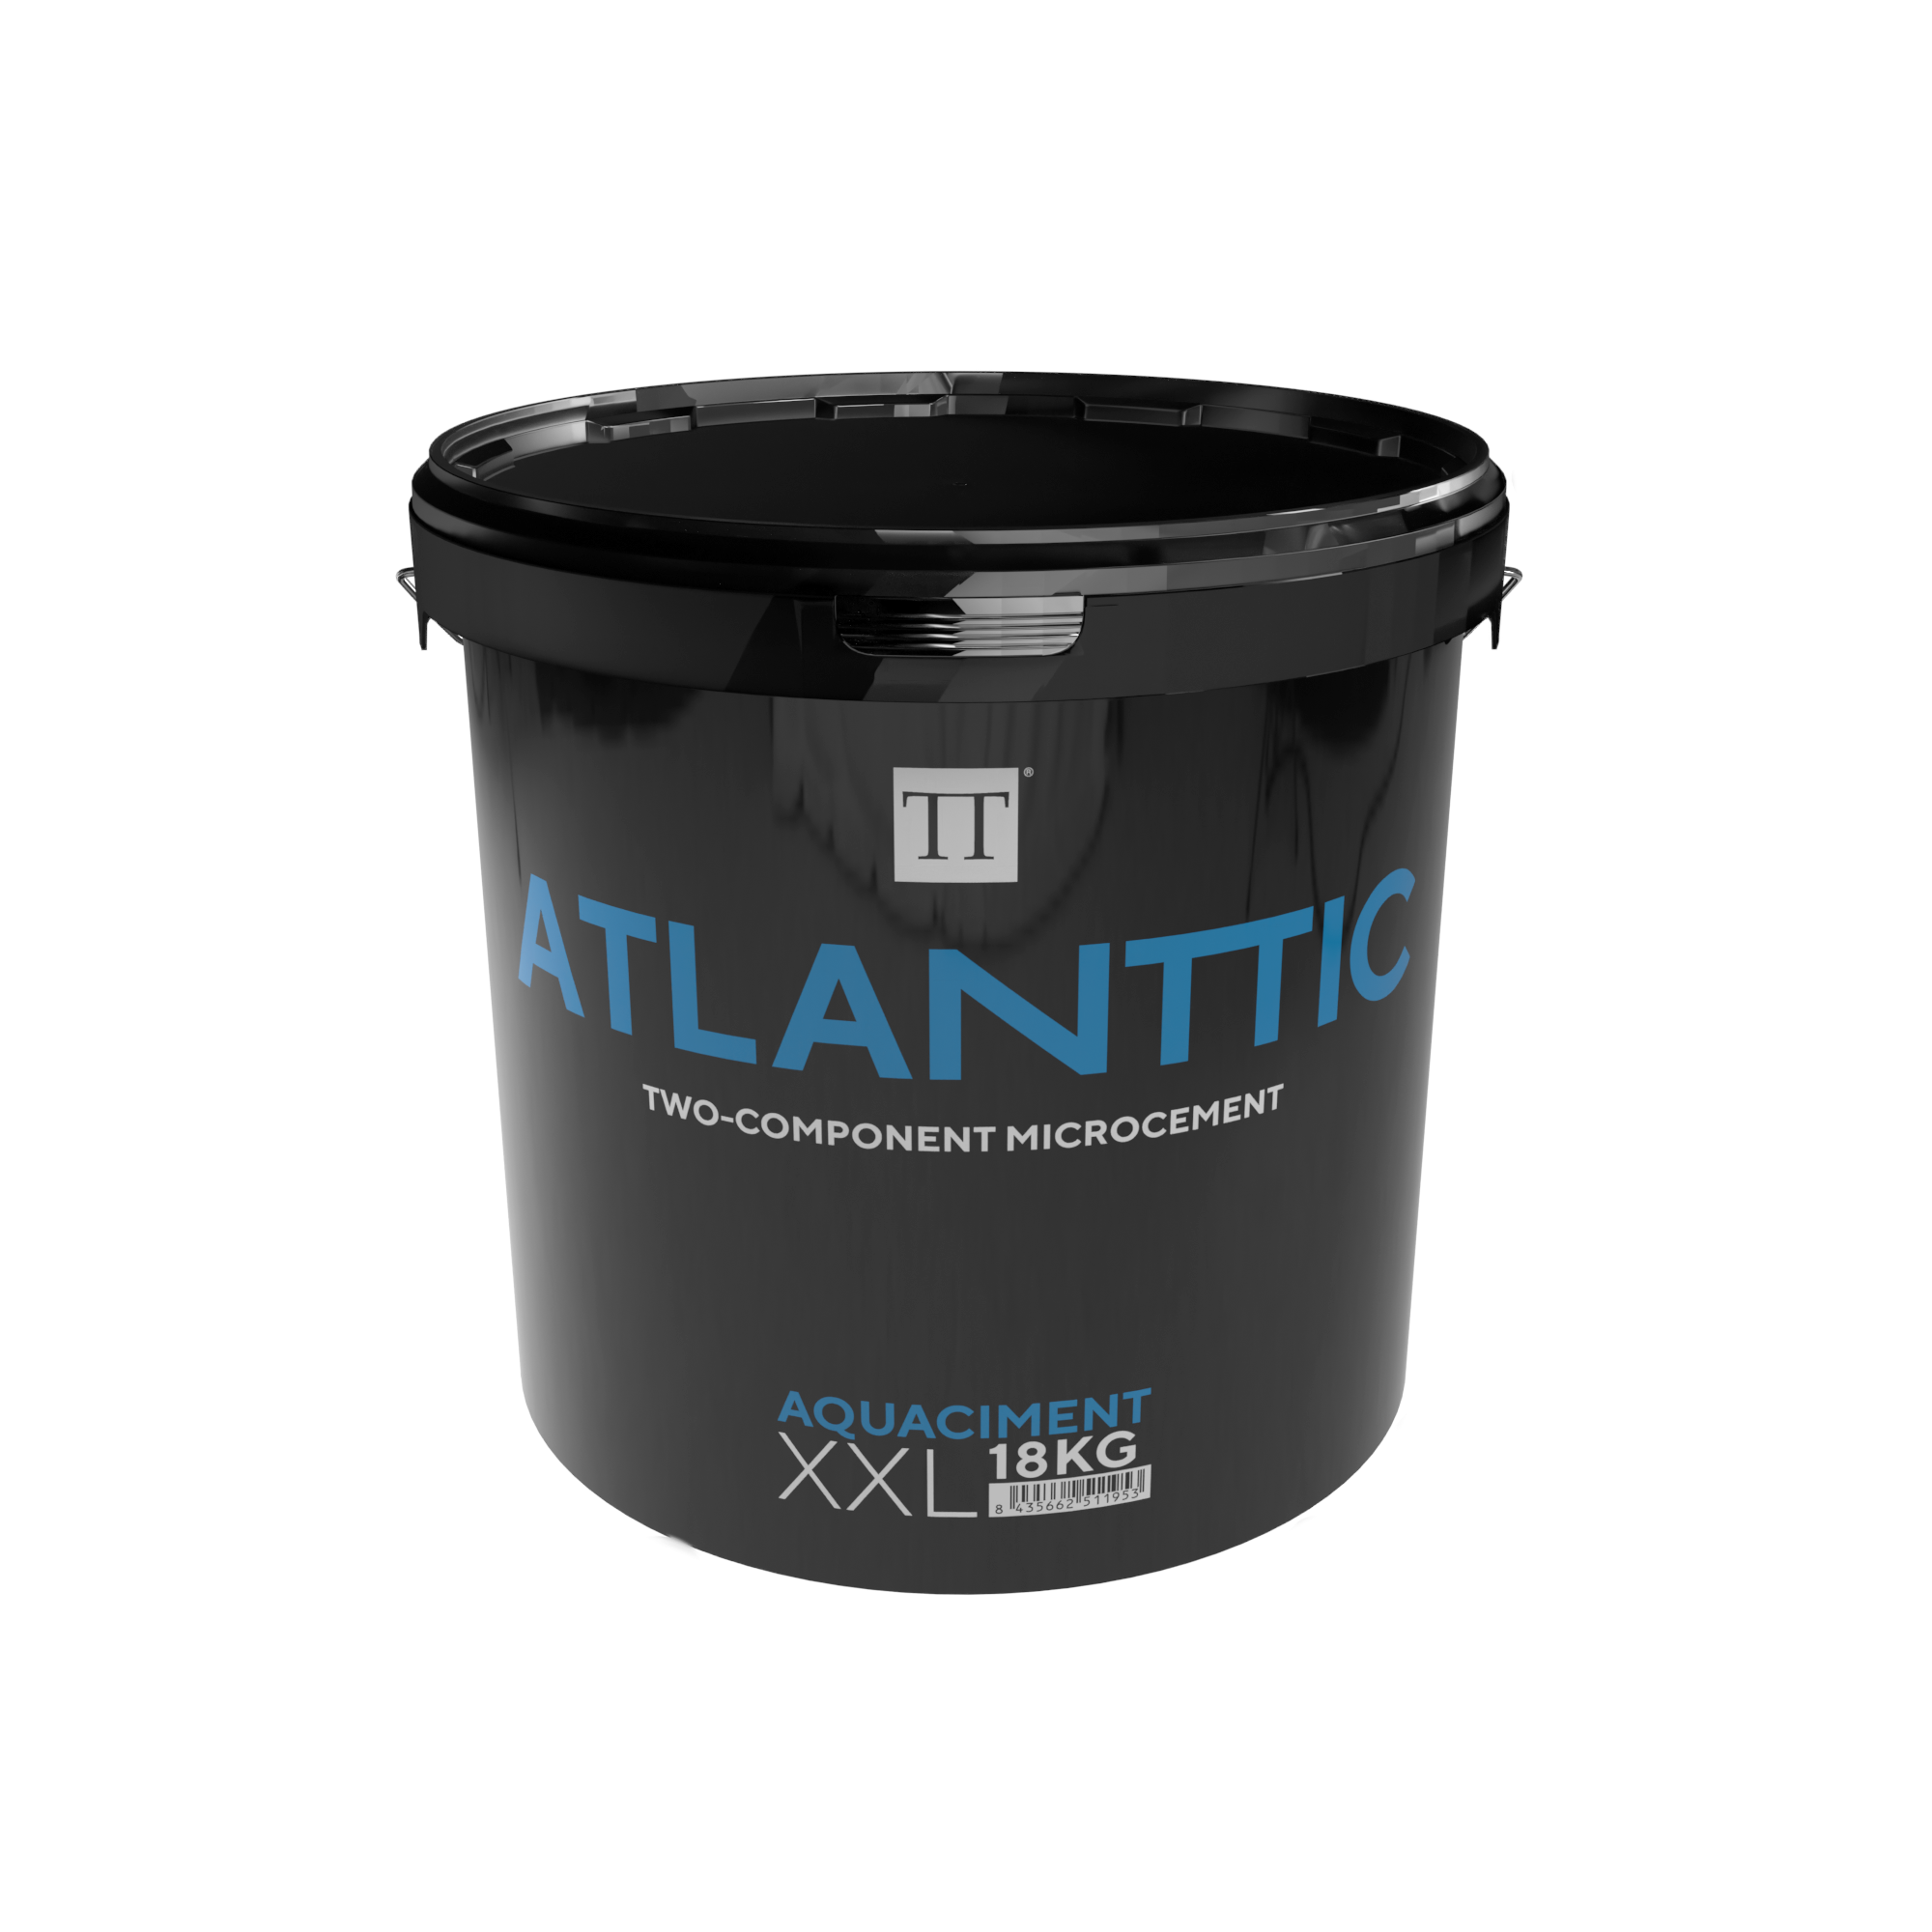 Atlanttic Aquaciment XXL